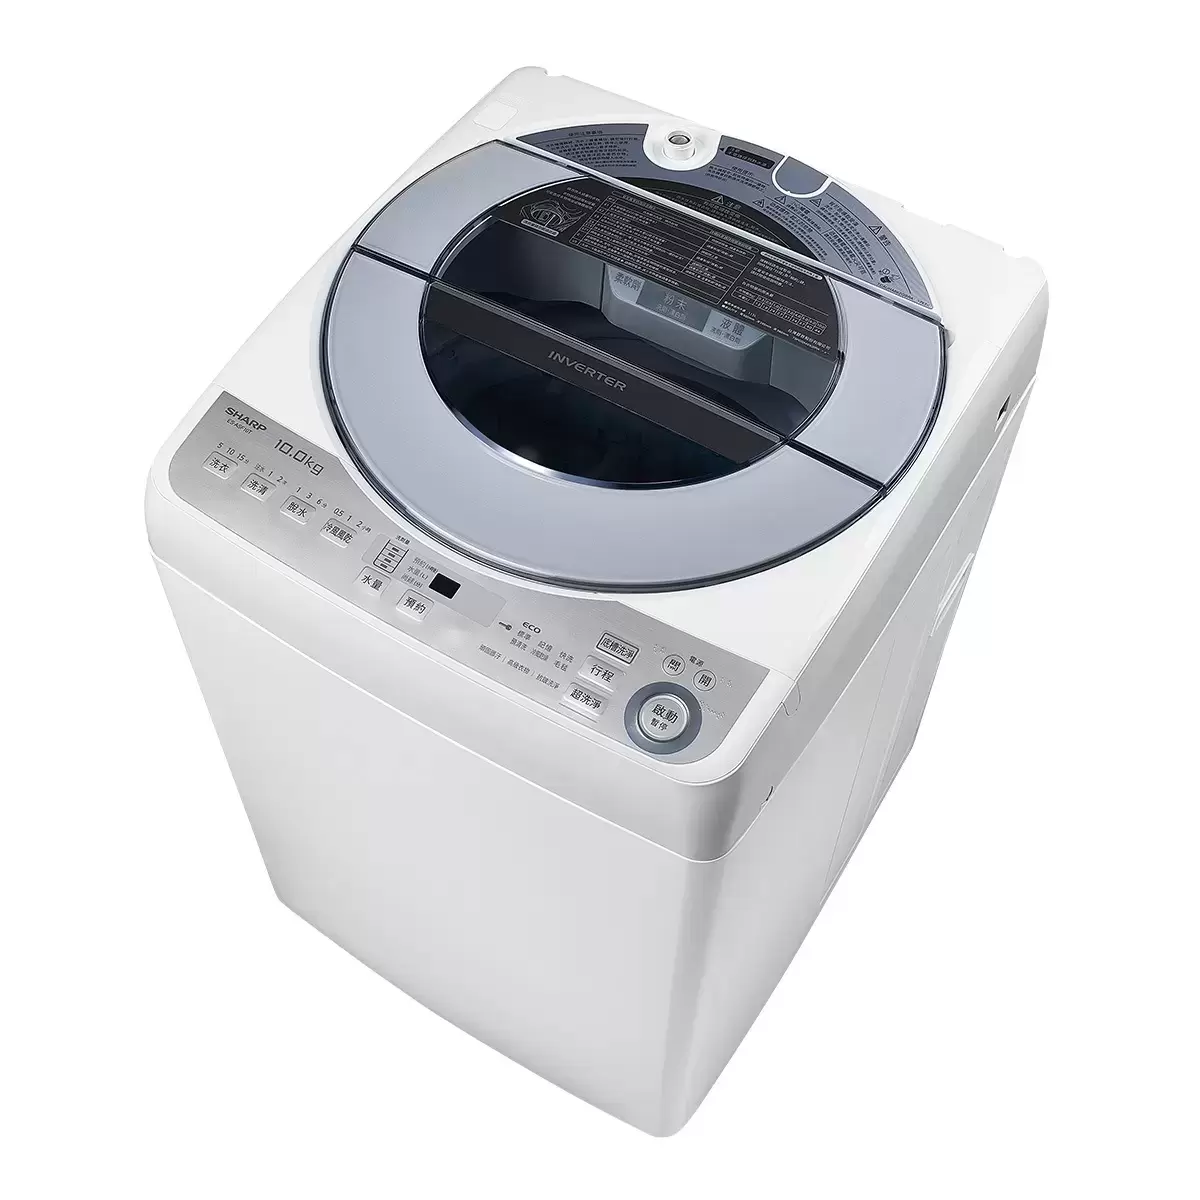 夏普 10公斤無孔槽變頻洗衣機 ES-ASF10T